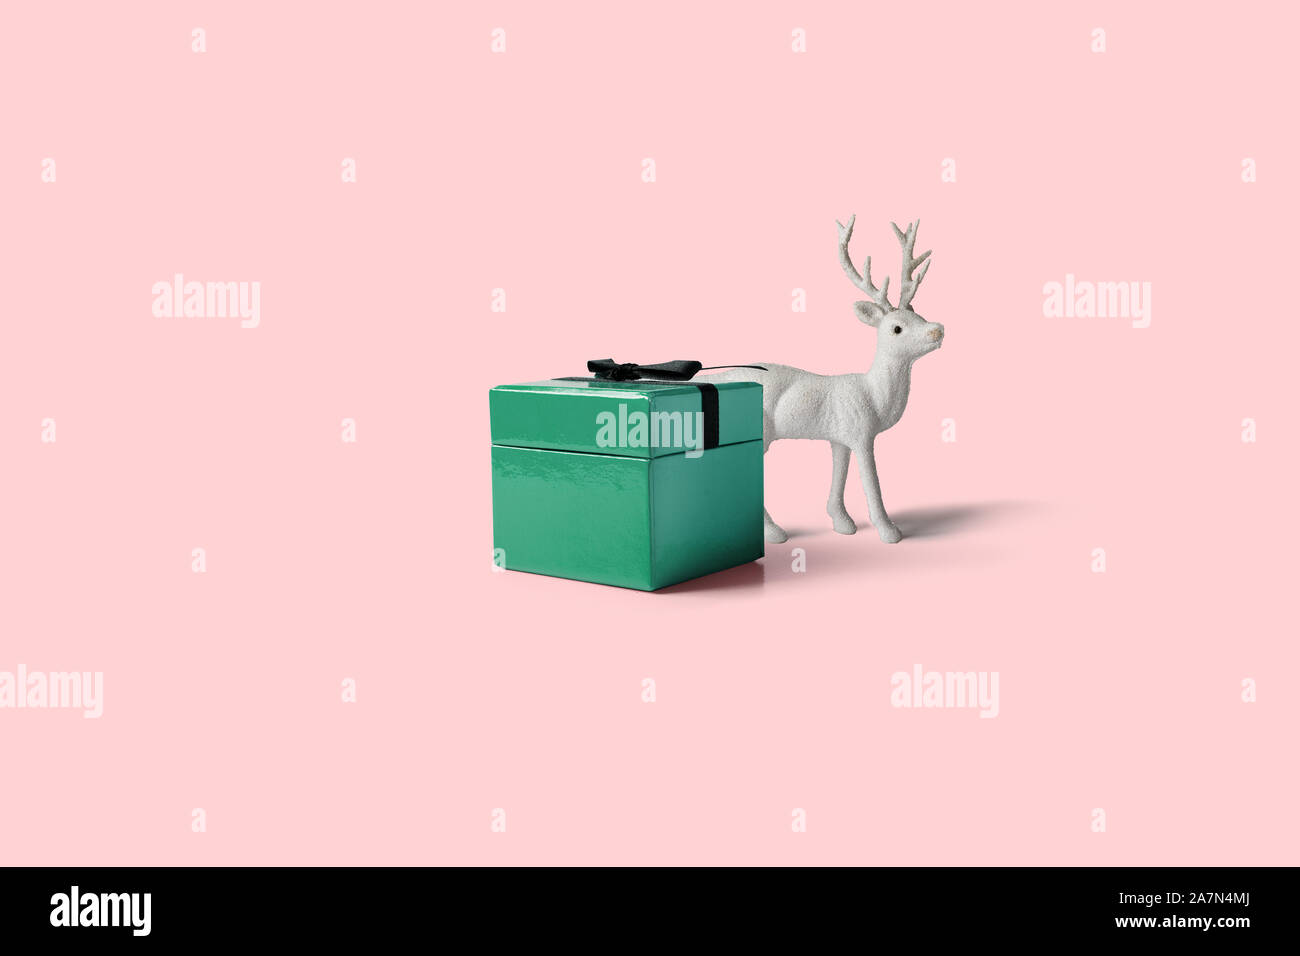 Weihnachten Geschenk "Jobticket", mit Schleife dekoriert, Pine Cone Ornament und weiße Rentier auf rosa Hintergrund. Weihnachten, Winter, neues Jahr minimalen Begriff Stockfoto